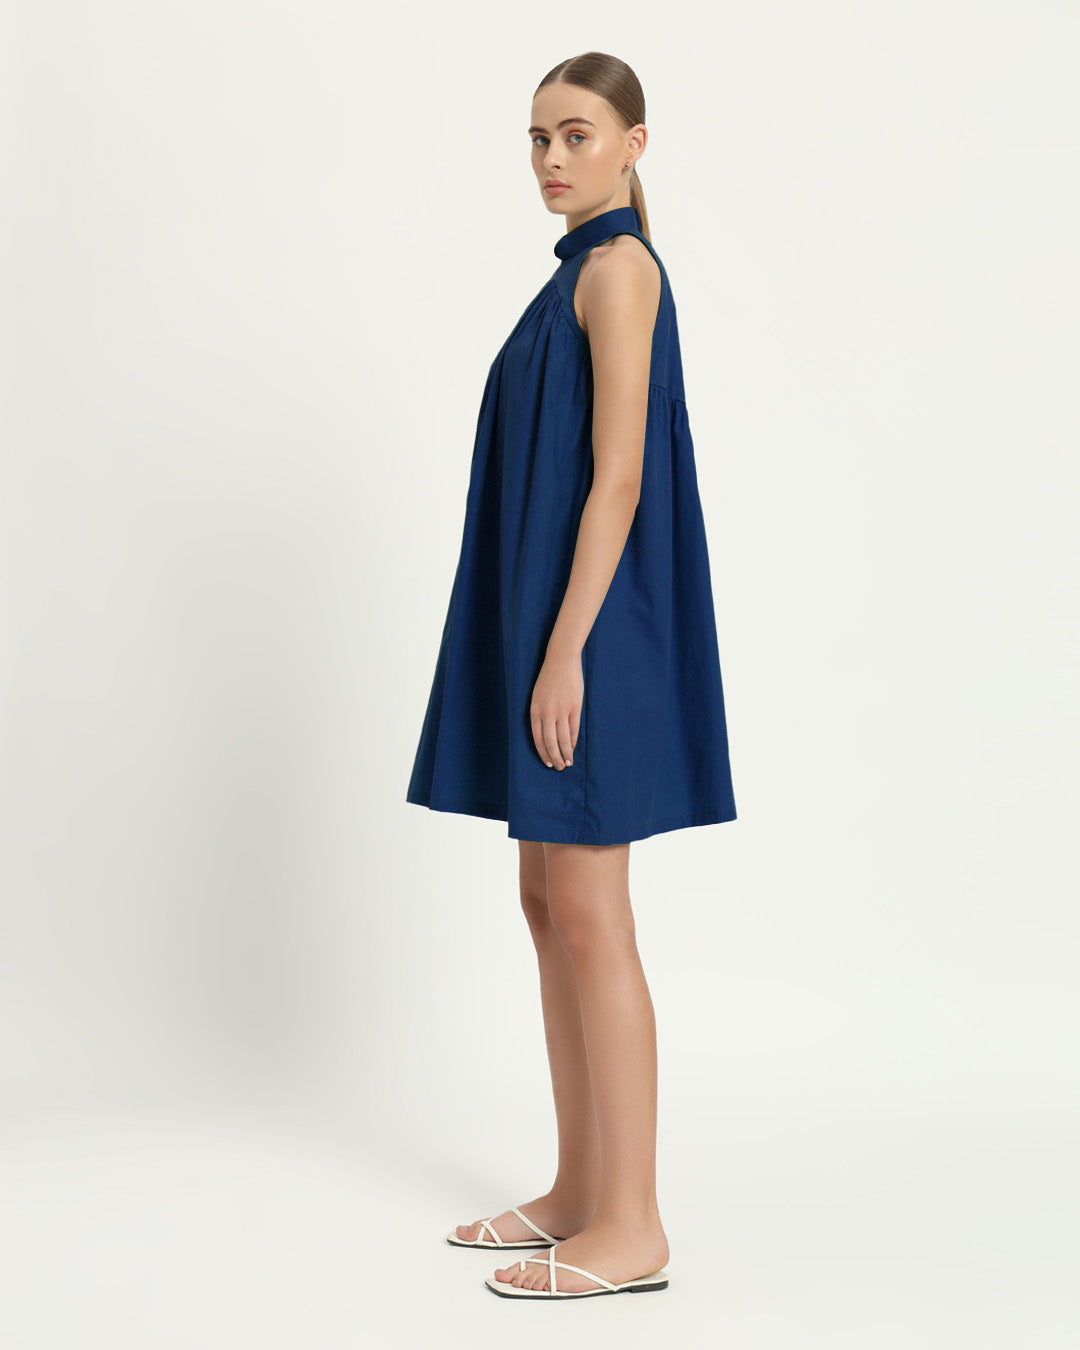 The Eruft Cobalt Cotton Dress